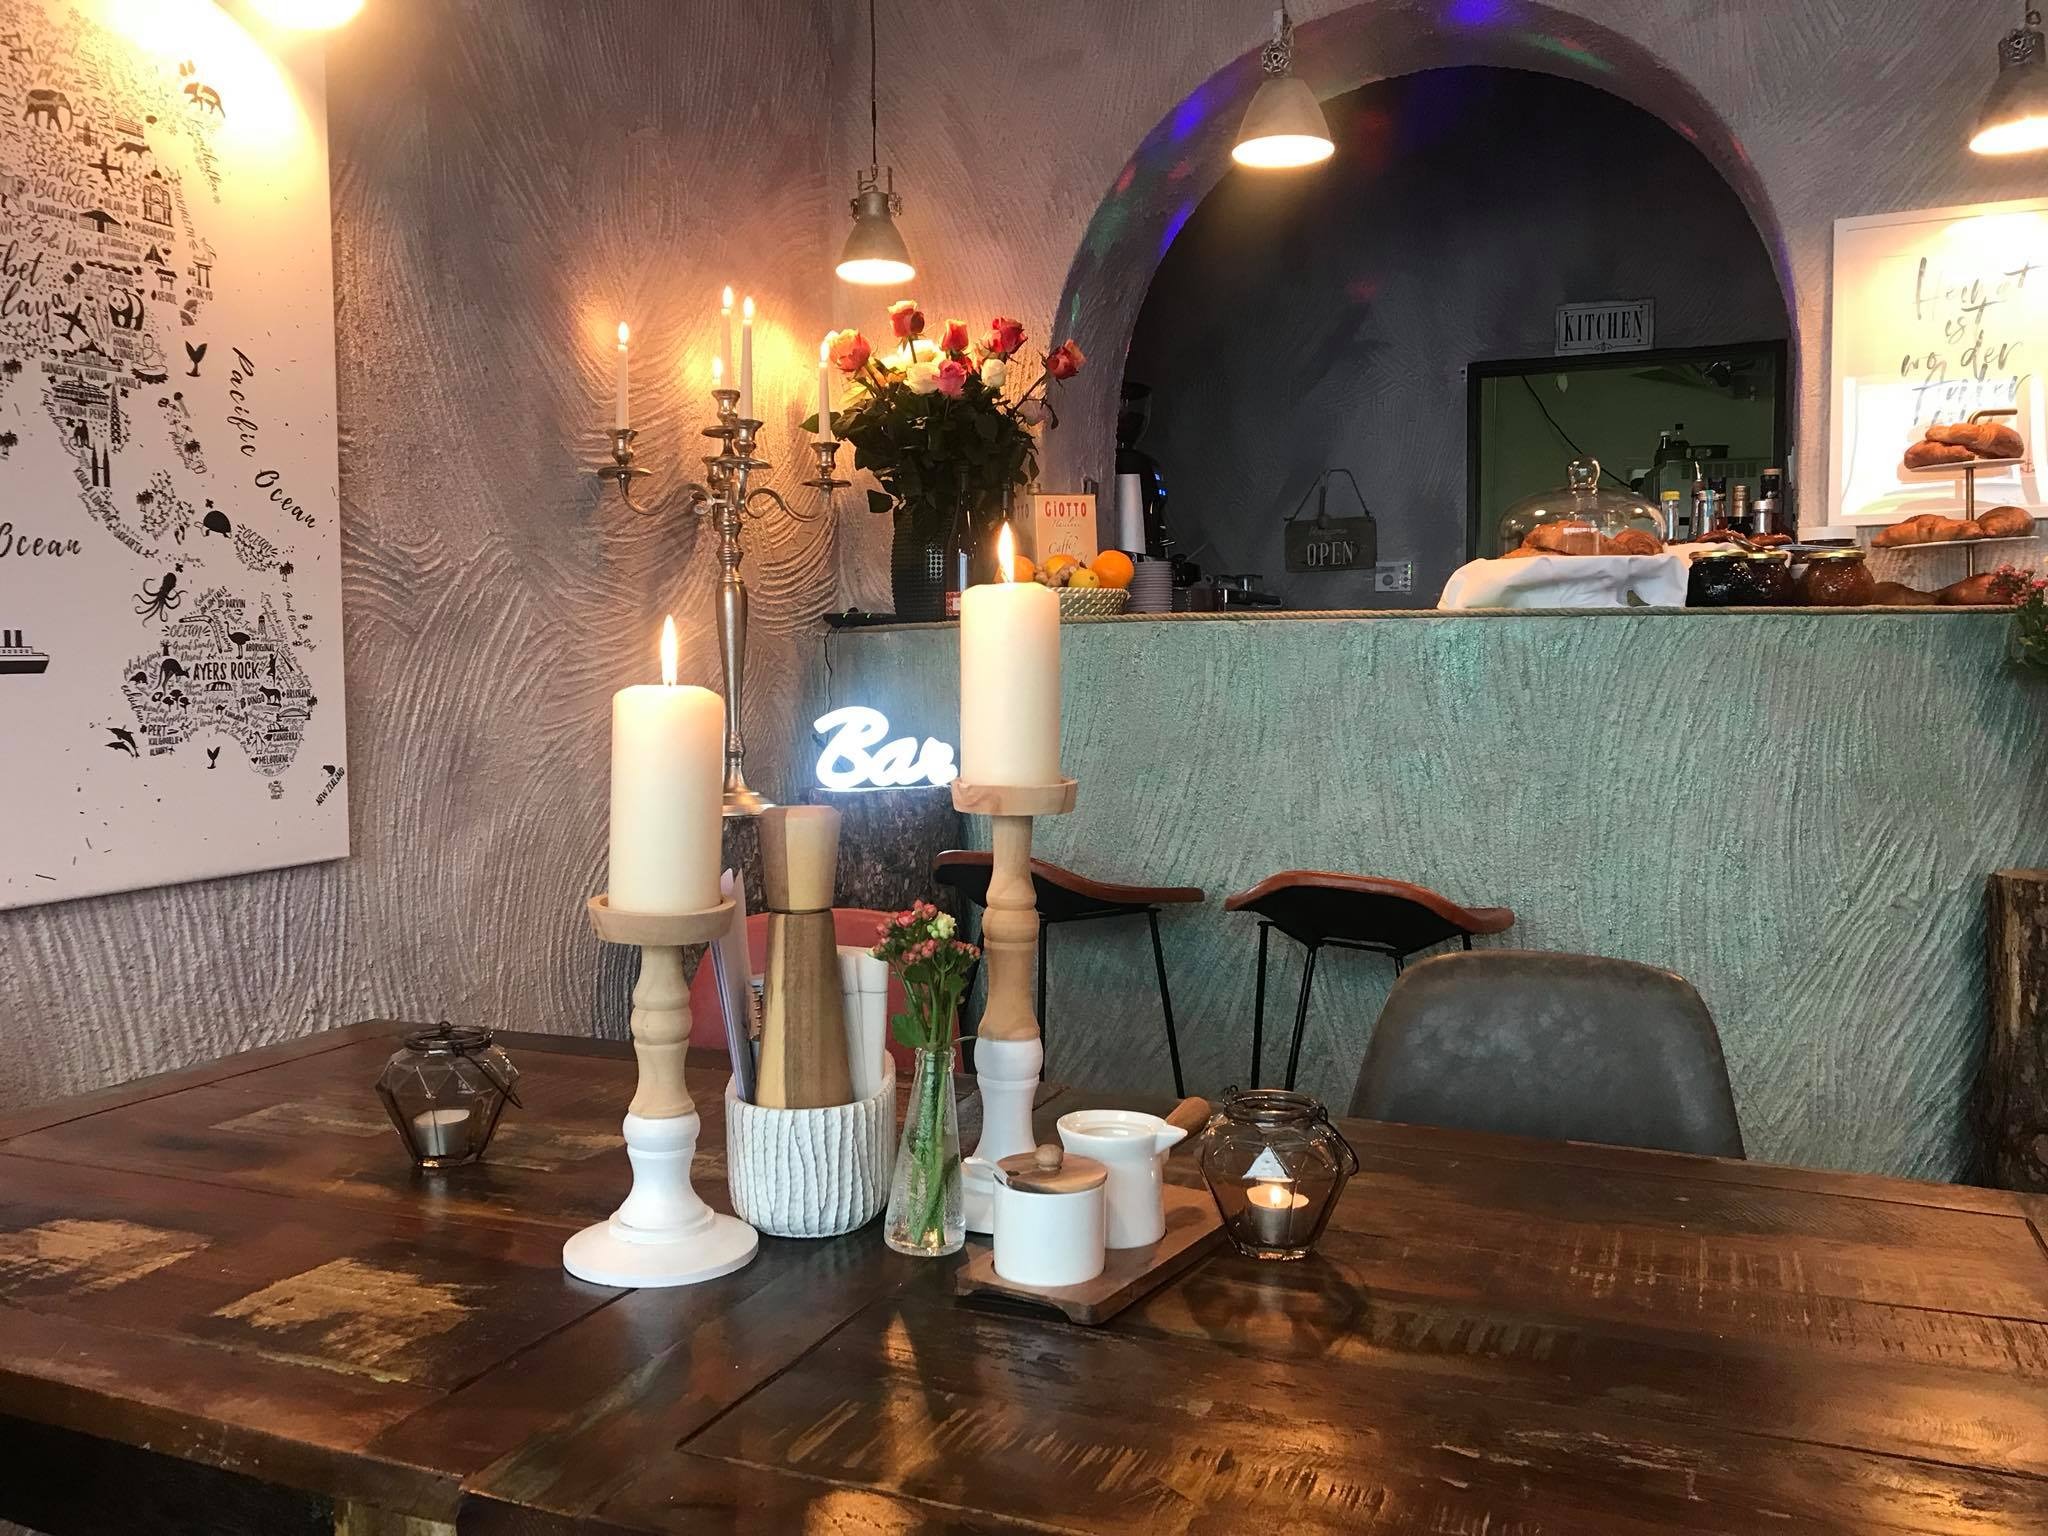 Café heimatliebe, Wirtstraße 15A in München